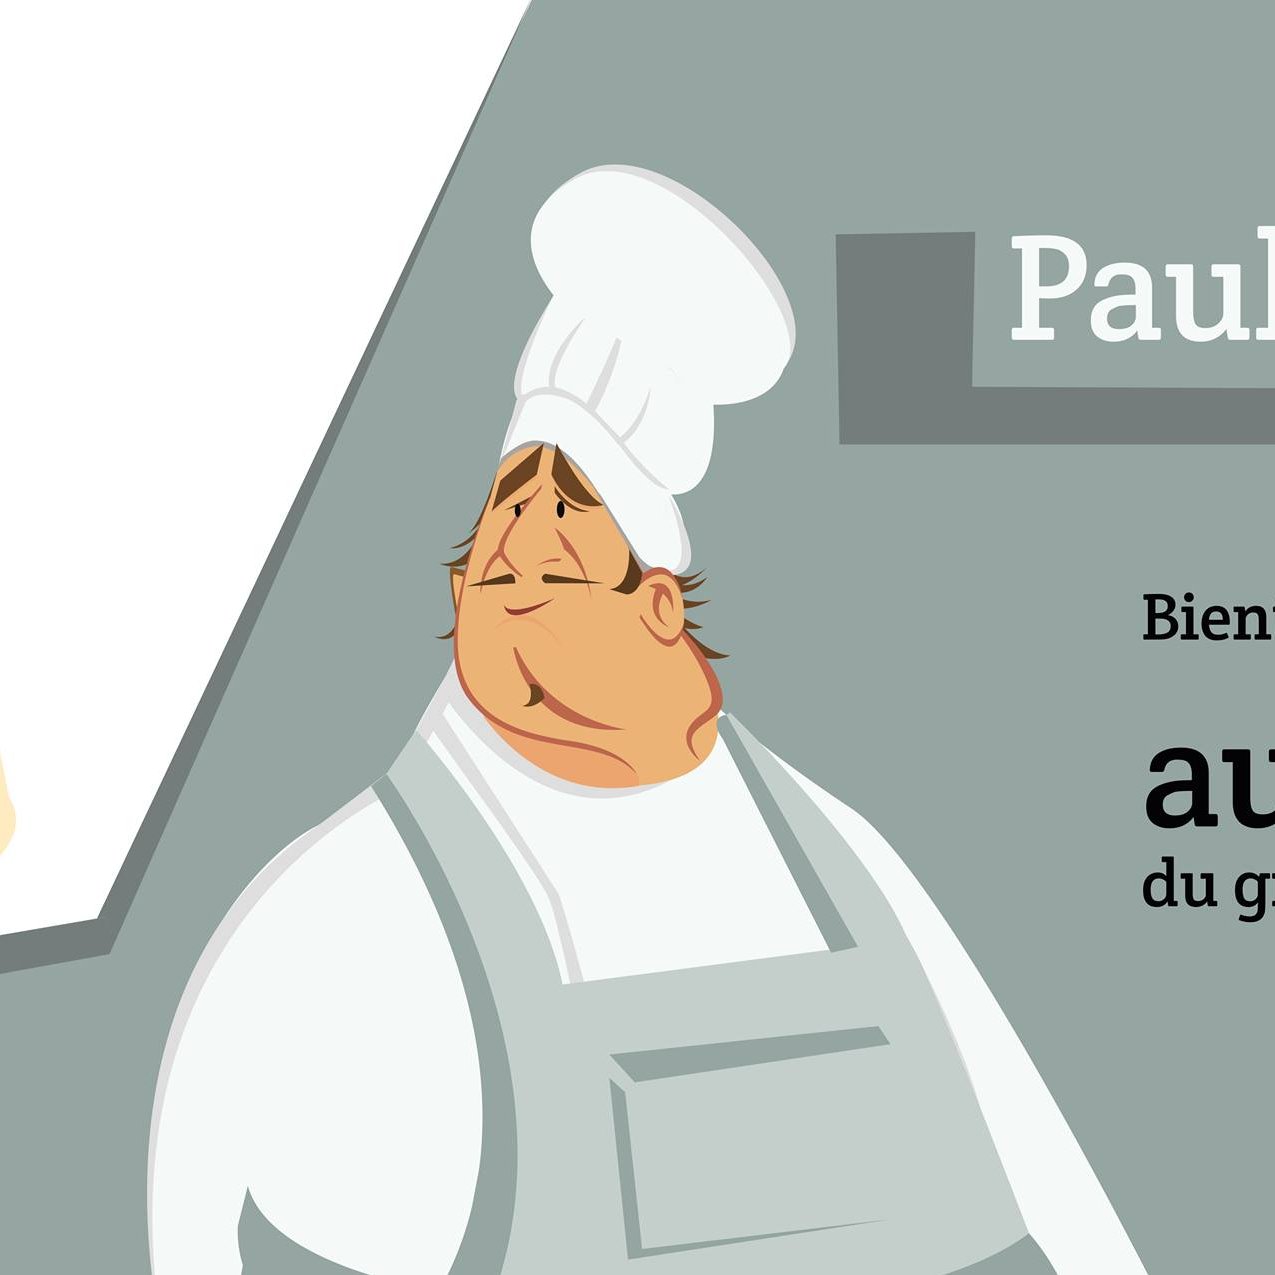 Projet à découvrir pour les petits curieux et amateurs de cuisine . Blog culinaire « Paul débauche »chef cuisinier et ses recettes #blog #cuisine #humour